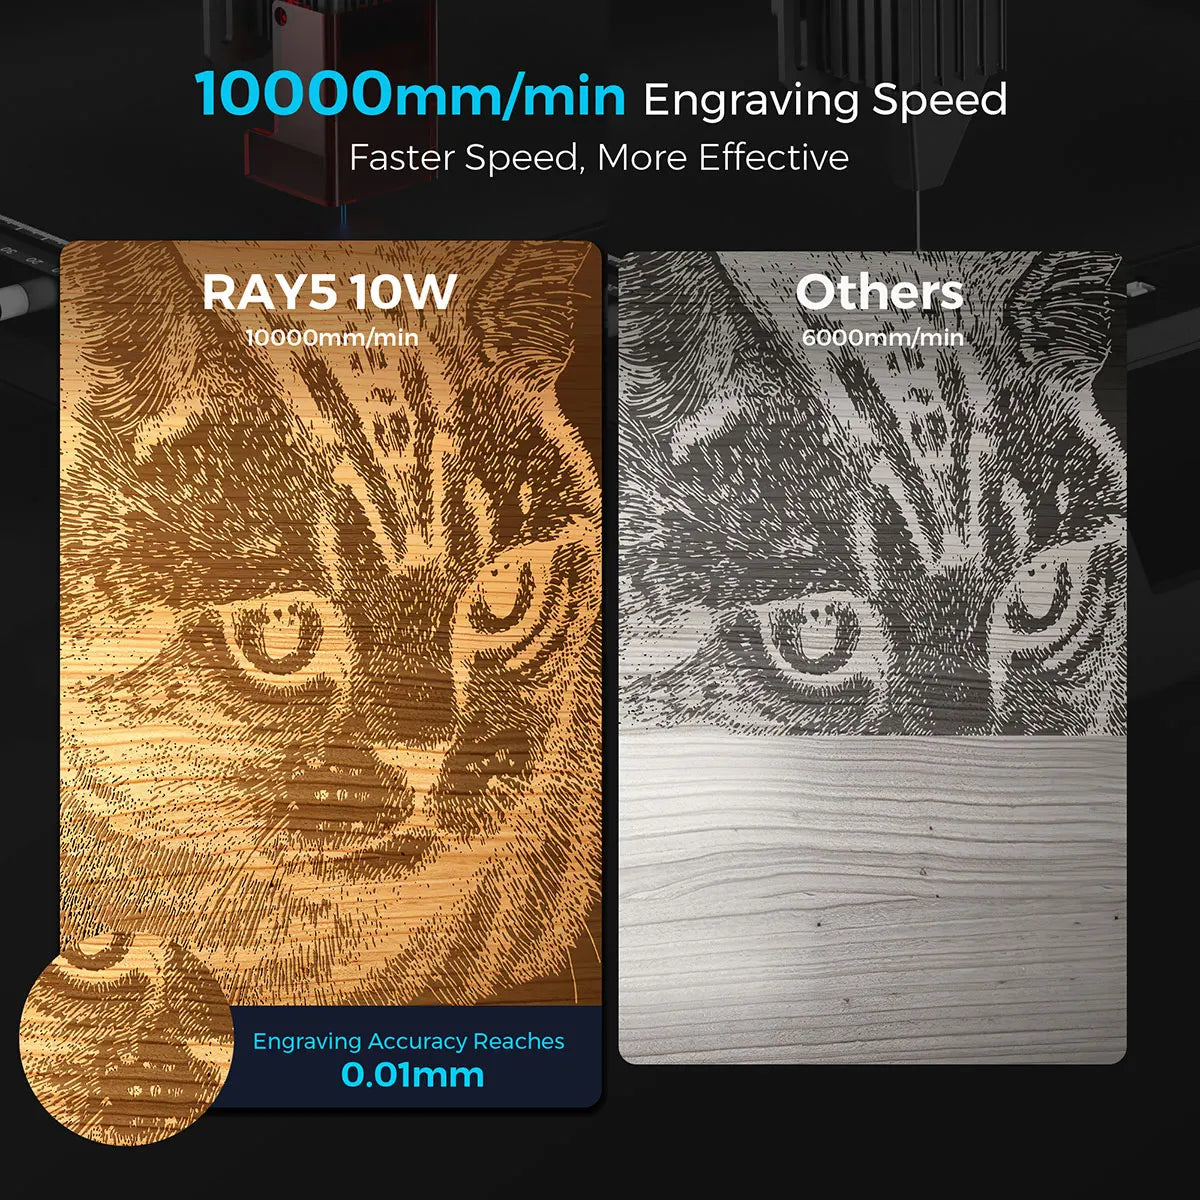 Longer Ray 5 10W laser engraving machine